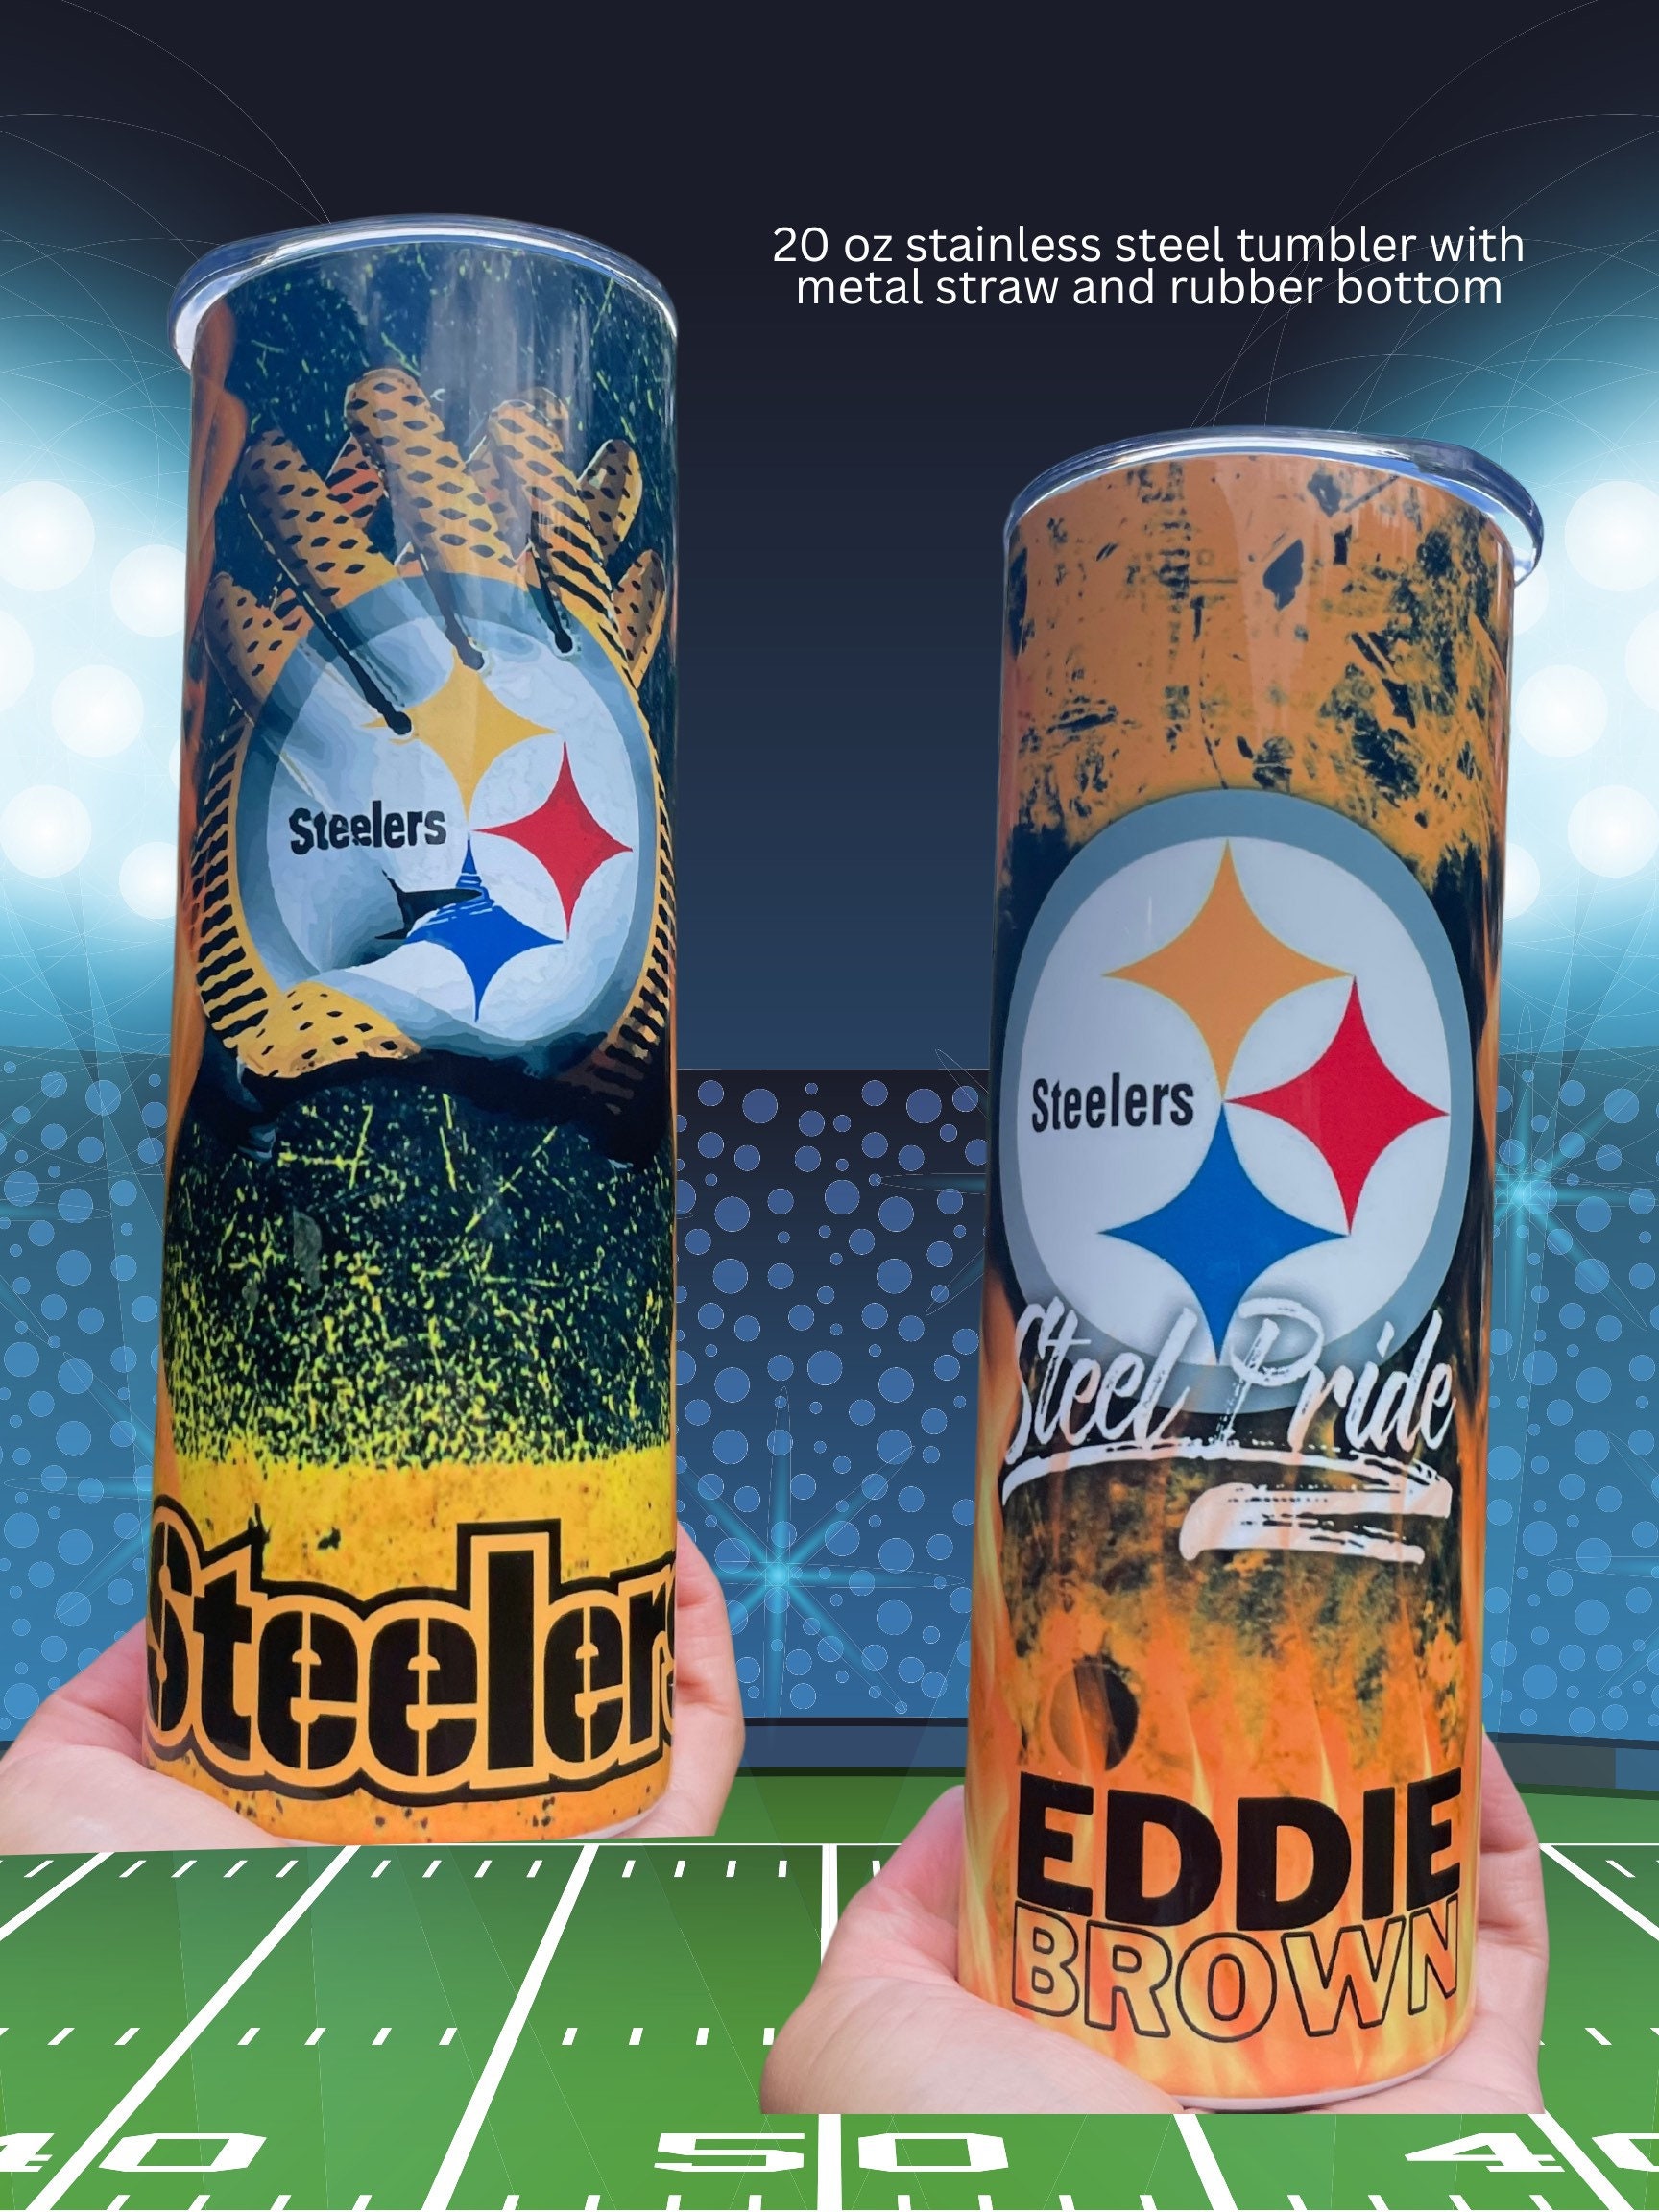 NFL Pittsburgh Steelers 16oz Acrylic Travel Tumbler with Metallic Graphics